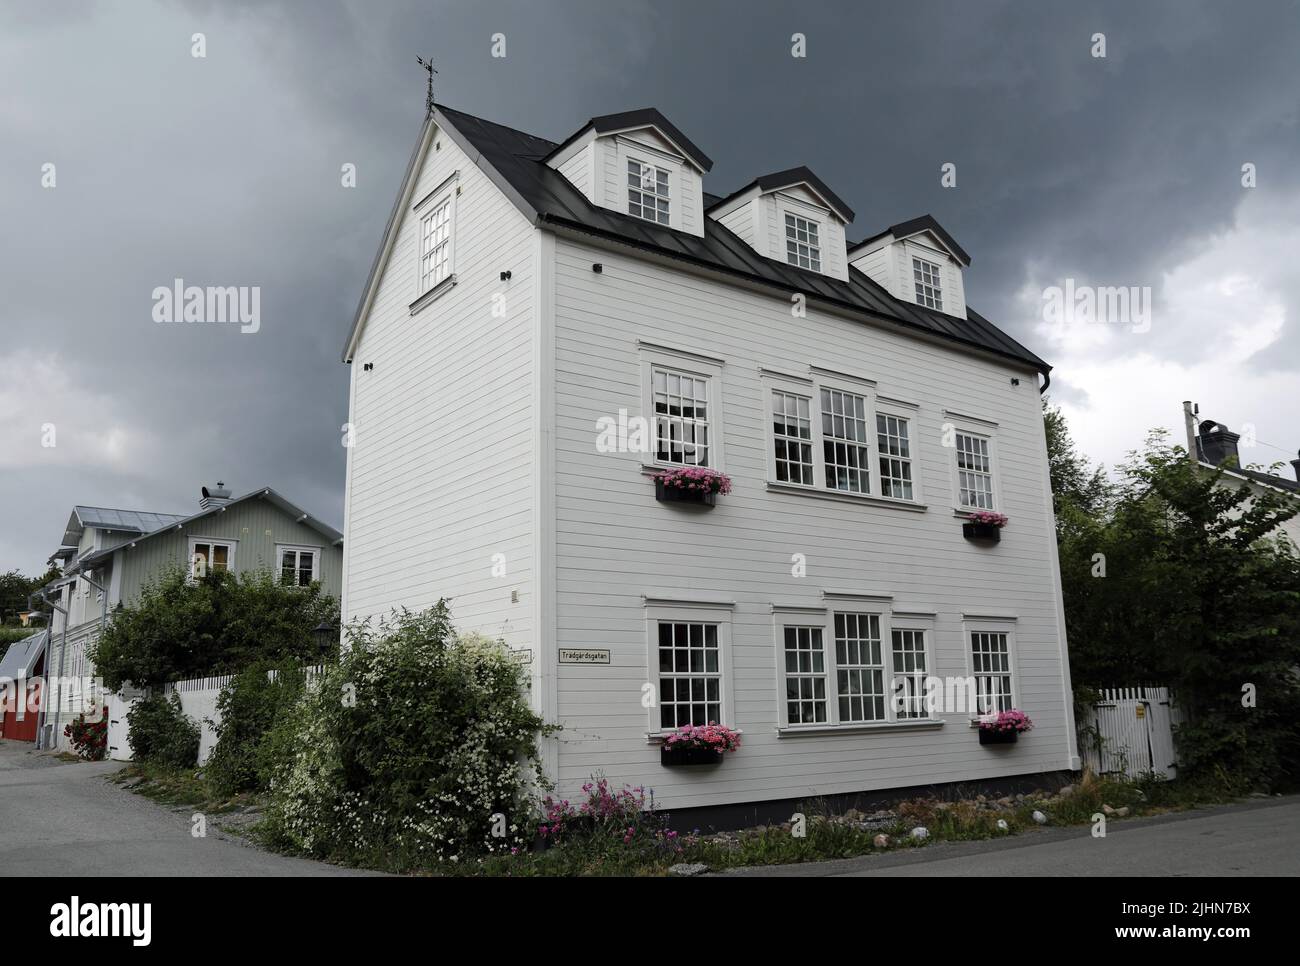 Cielo tormentoso sobre casas en la isla sueca de Vaxholm en Estocolmo Foto de stock